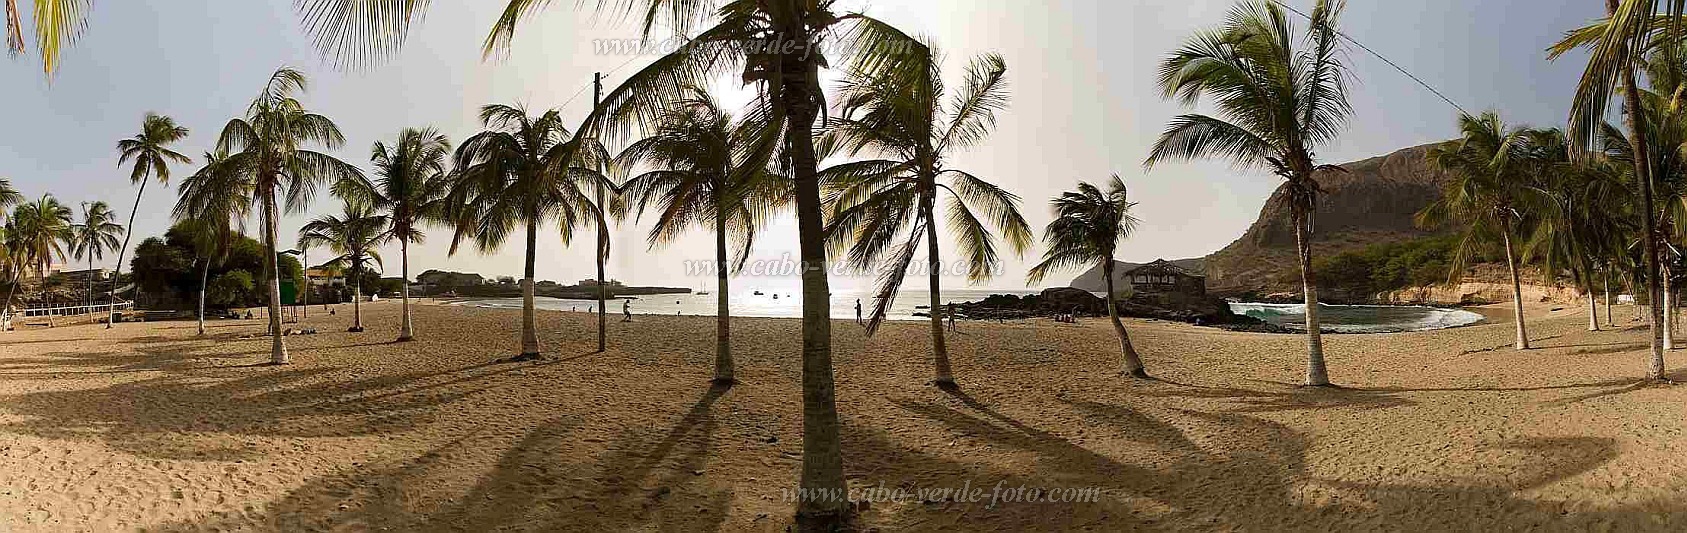 Santiago : Tarrafal : coqueiros na praia de baia verde : Landscape SeaCabo Verde Foto Gallery